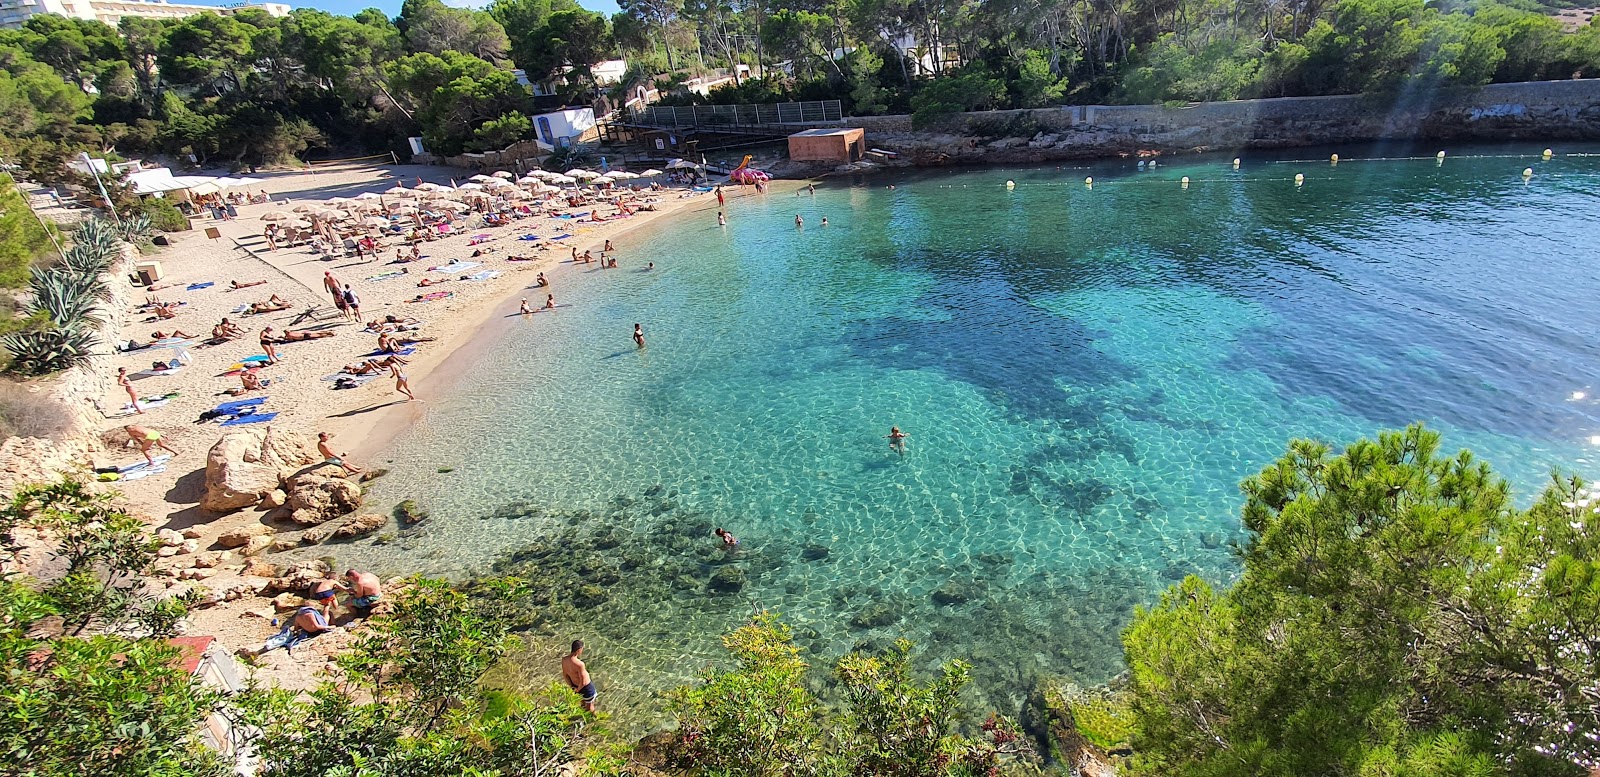 Cala Gracio'in fotoğrafı parlak ince kum yüzey ile